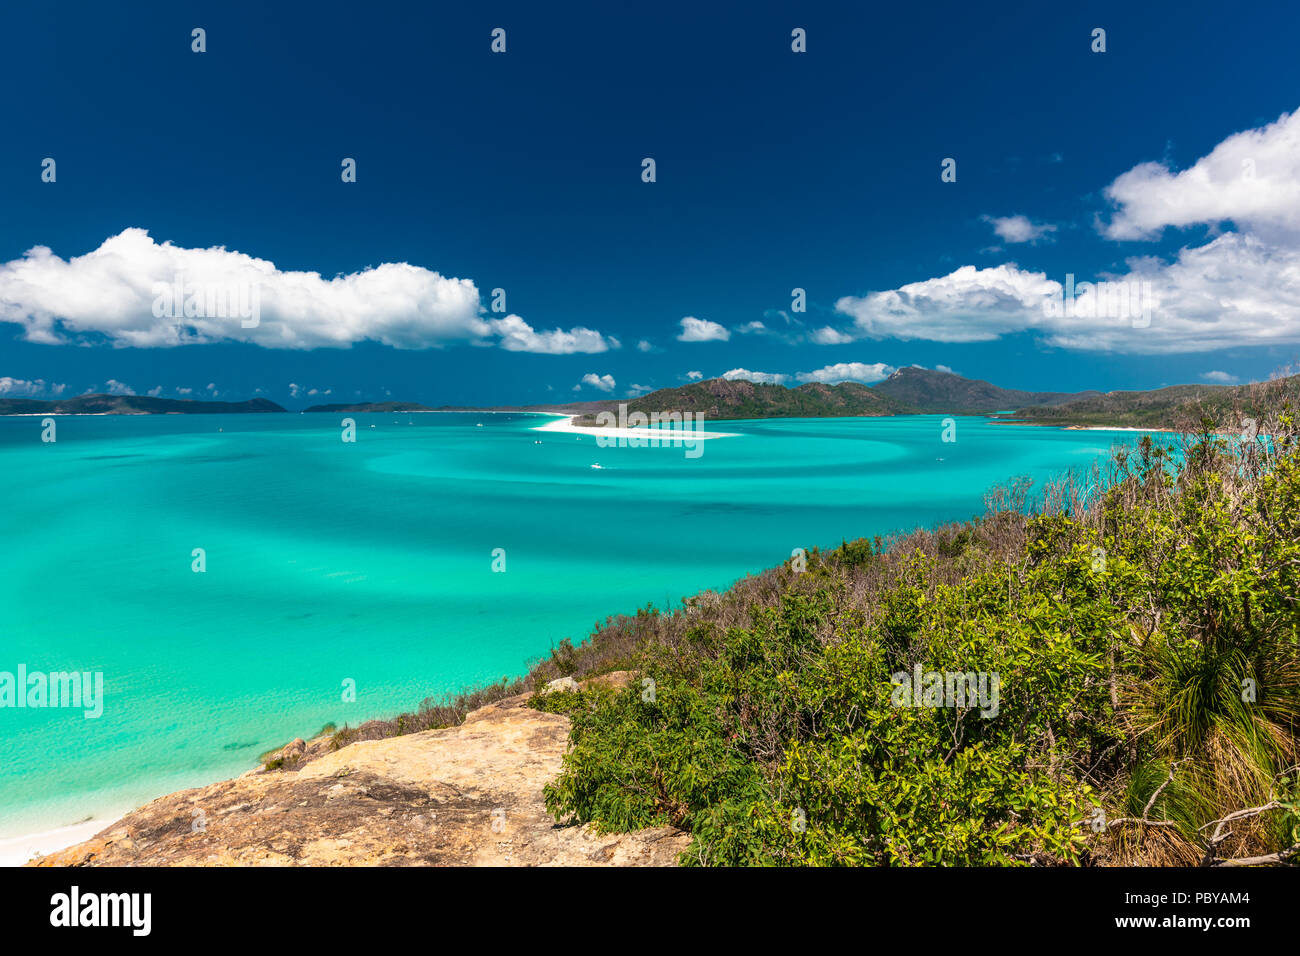 Vue panoramique de l'étonnant Whitehaven Beach dans les Whitsunday Islands, Australie Banque D'Images